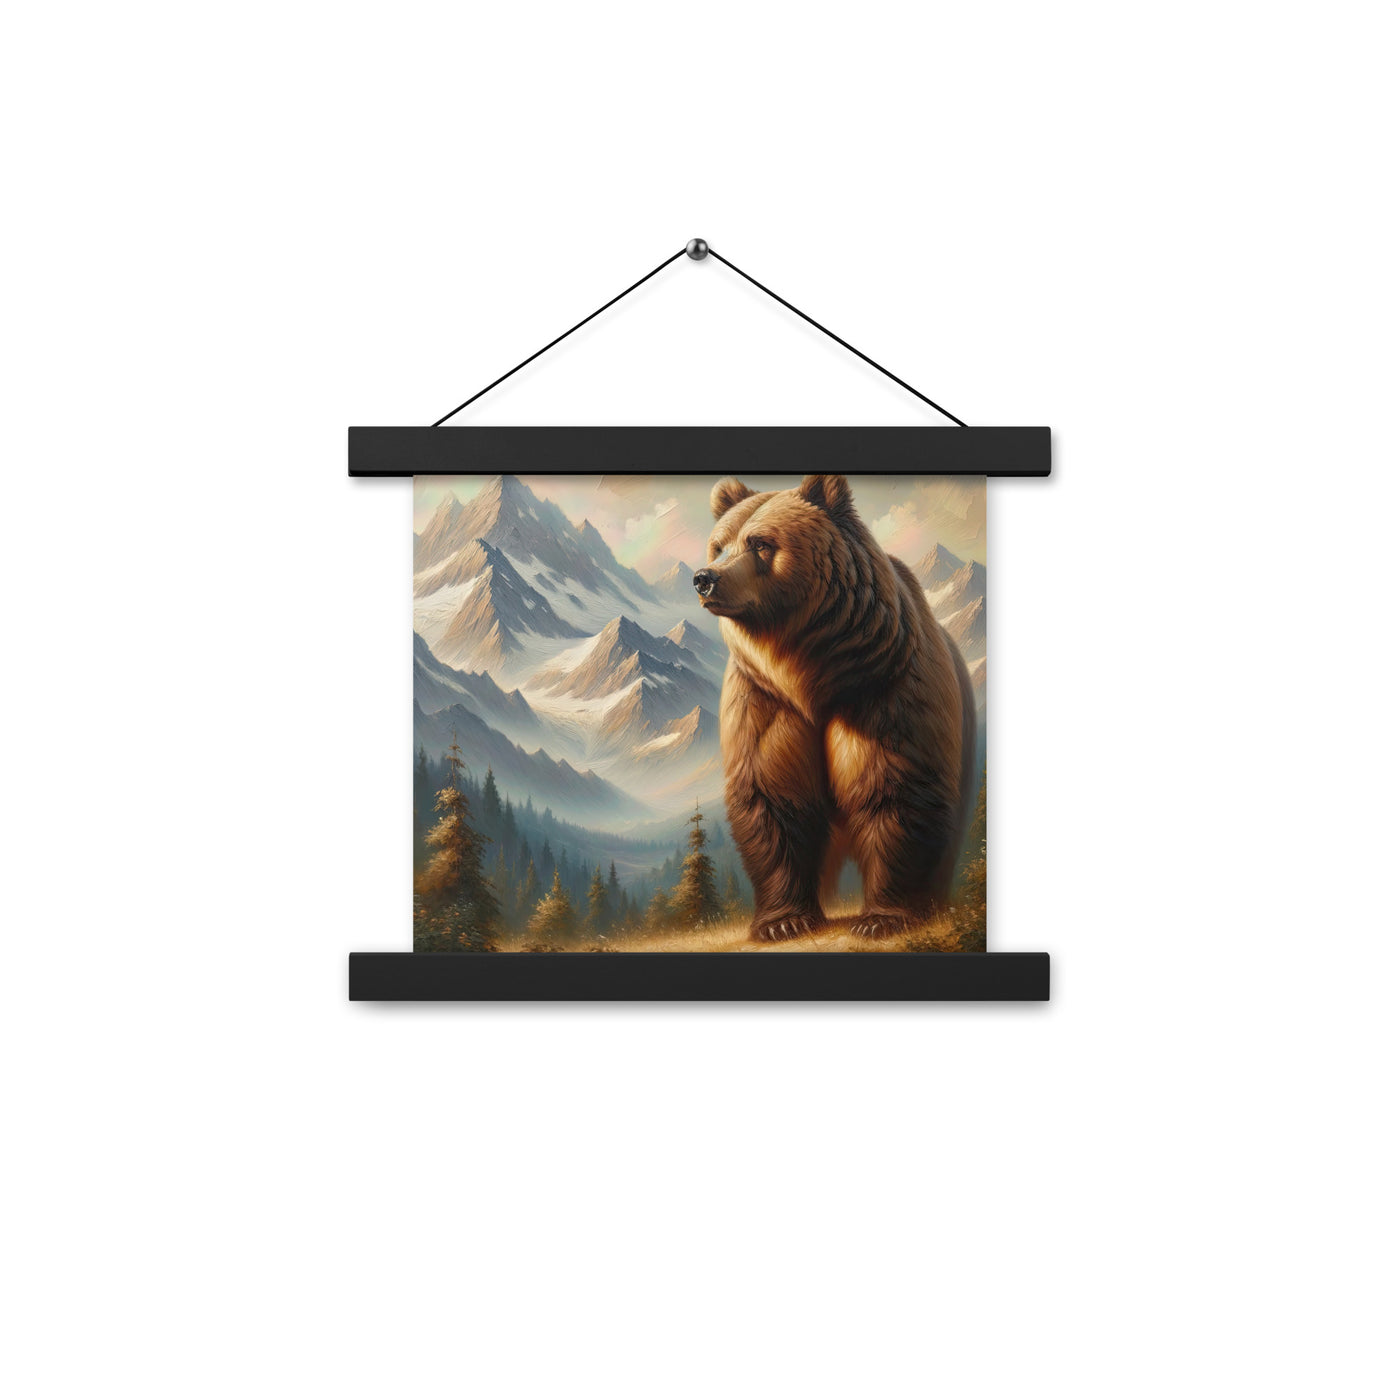 Ölgemälde eines königlichen Bären vor der majestätischen Alpenkulisse - Premium Poster mit Aufhängung camping xxx yyy zzz 25.4 x 25.4 cm